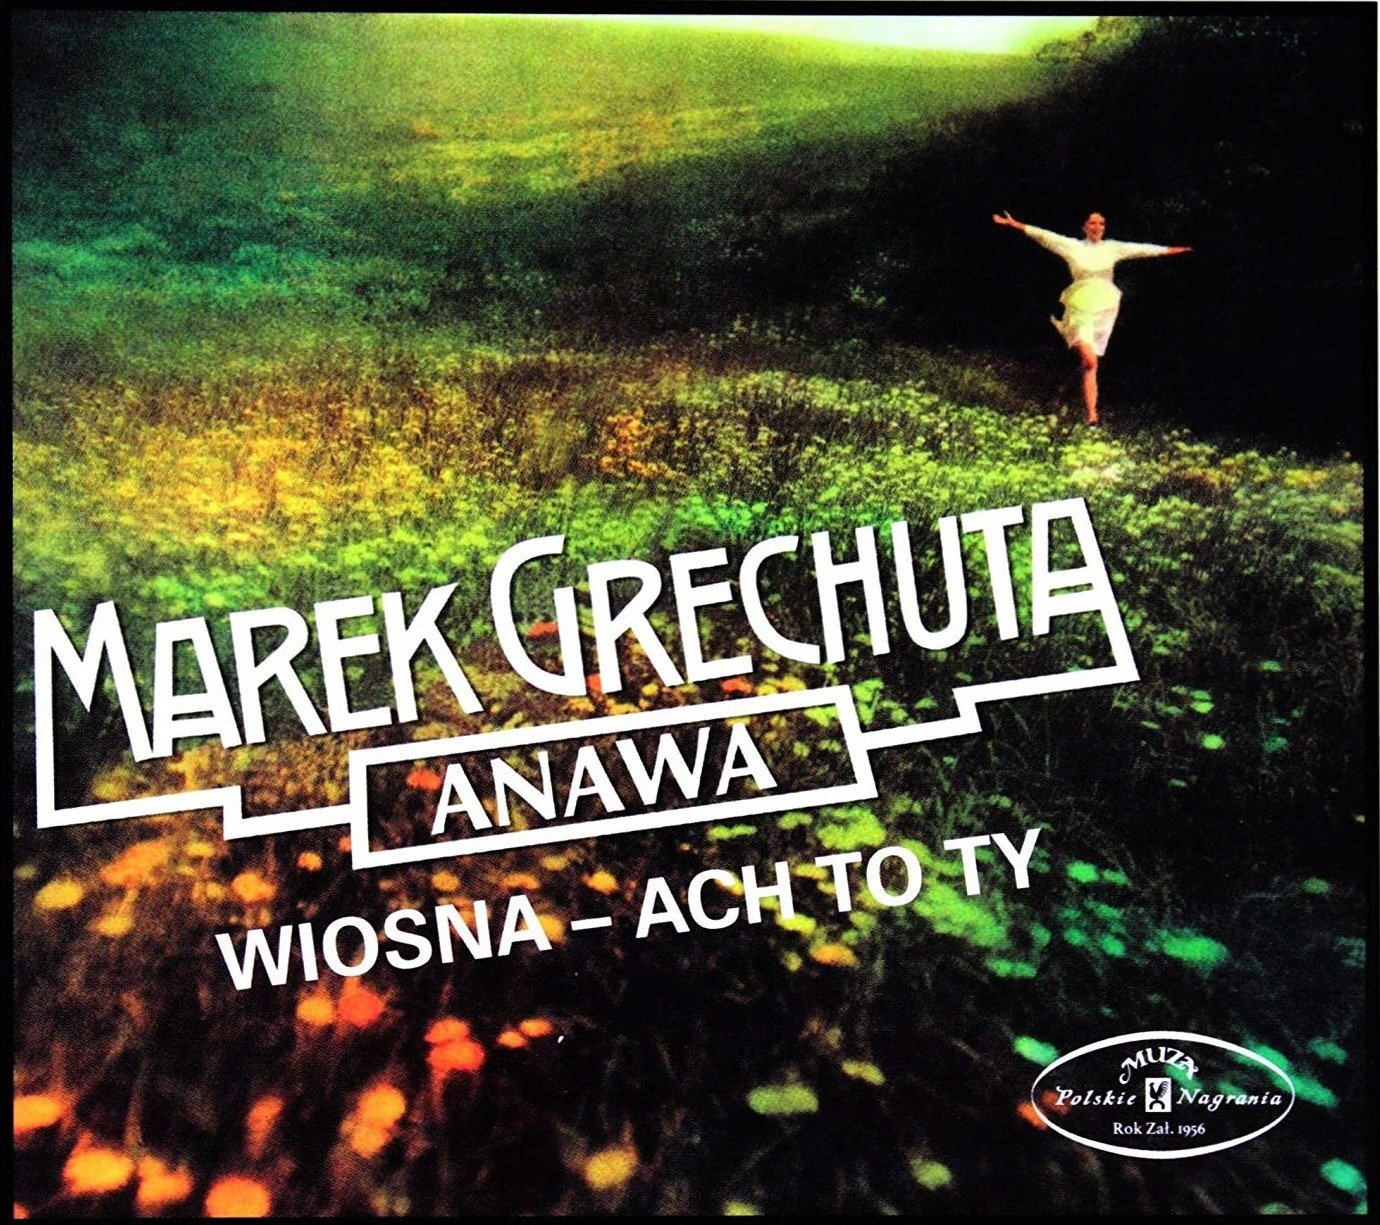 CD Shop - GRECHUTA MAREK & ANAWA WIOSNA - ACH TO TY